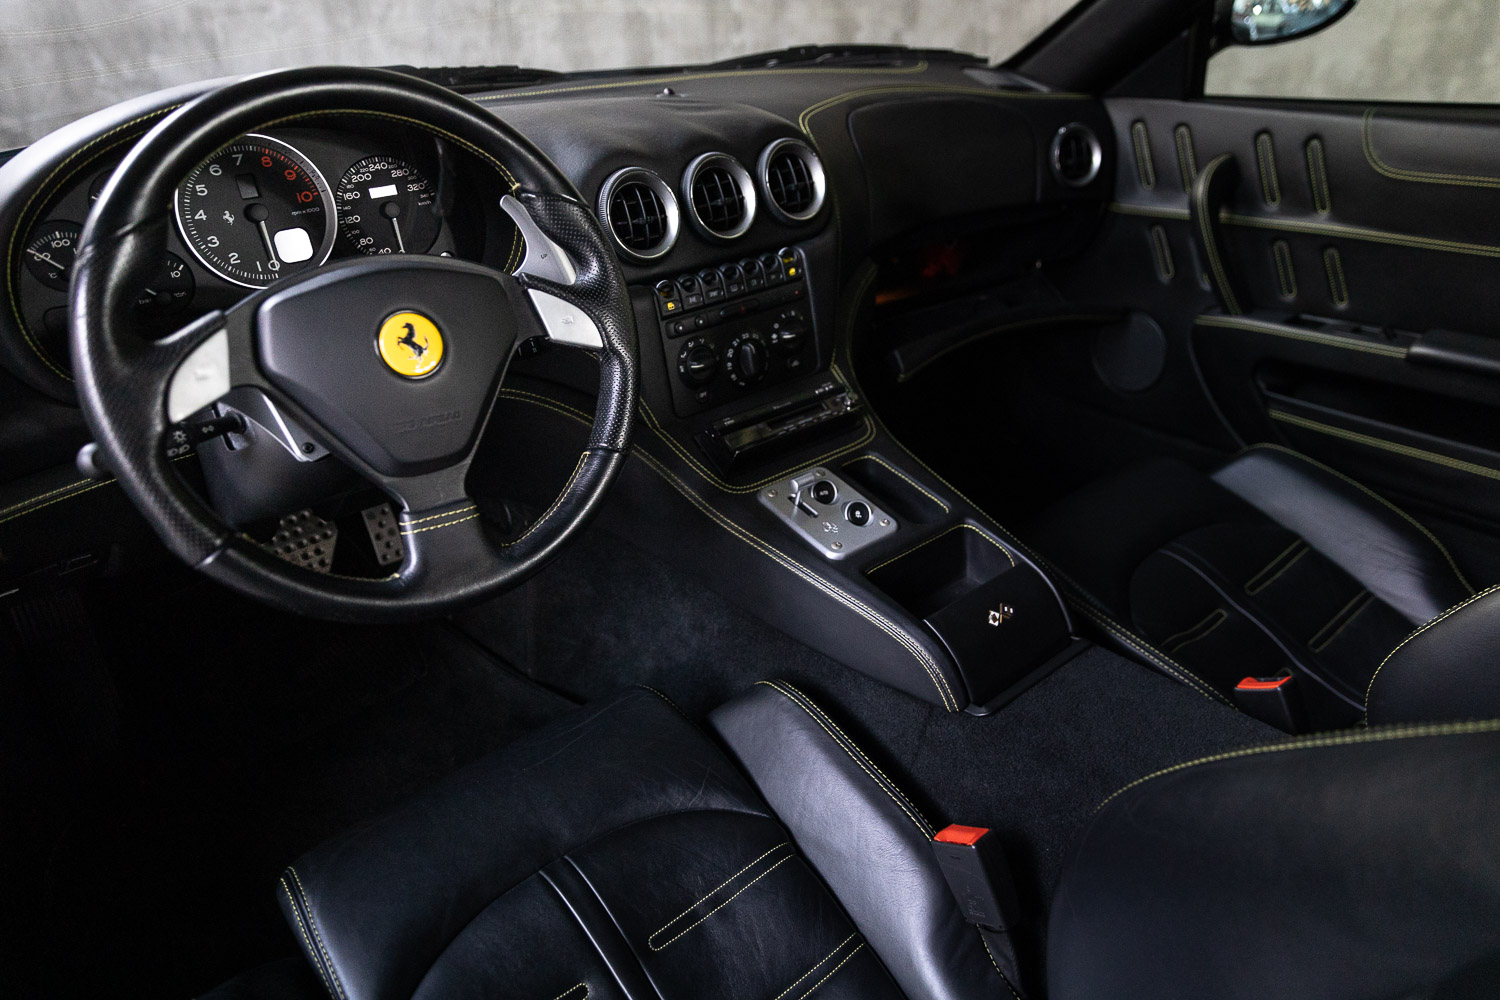 2004-Ferrari-575M-for-sale-DriveCity-Sales-72dpi-17